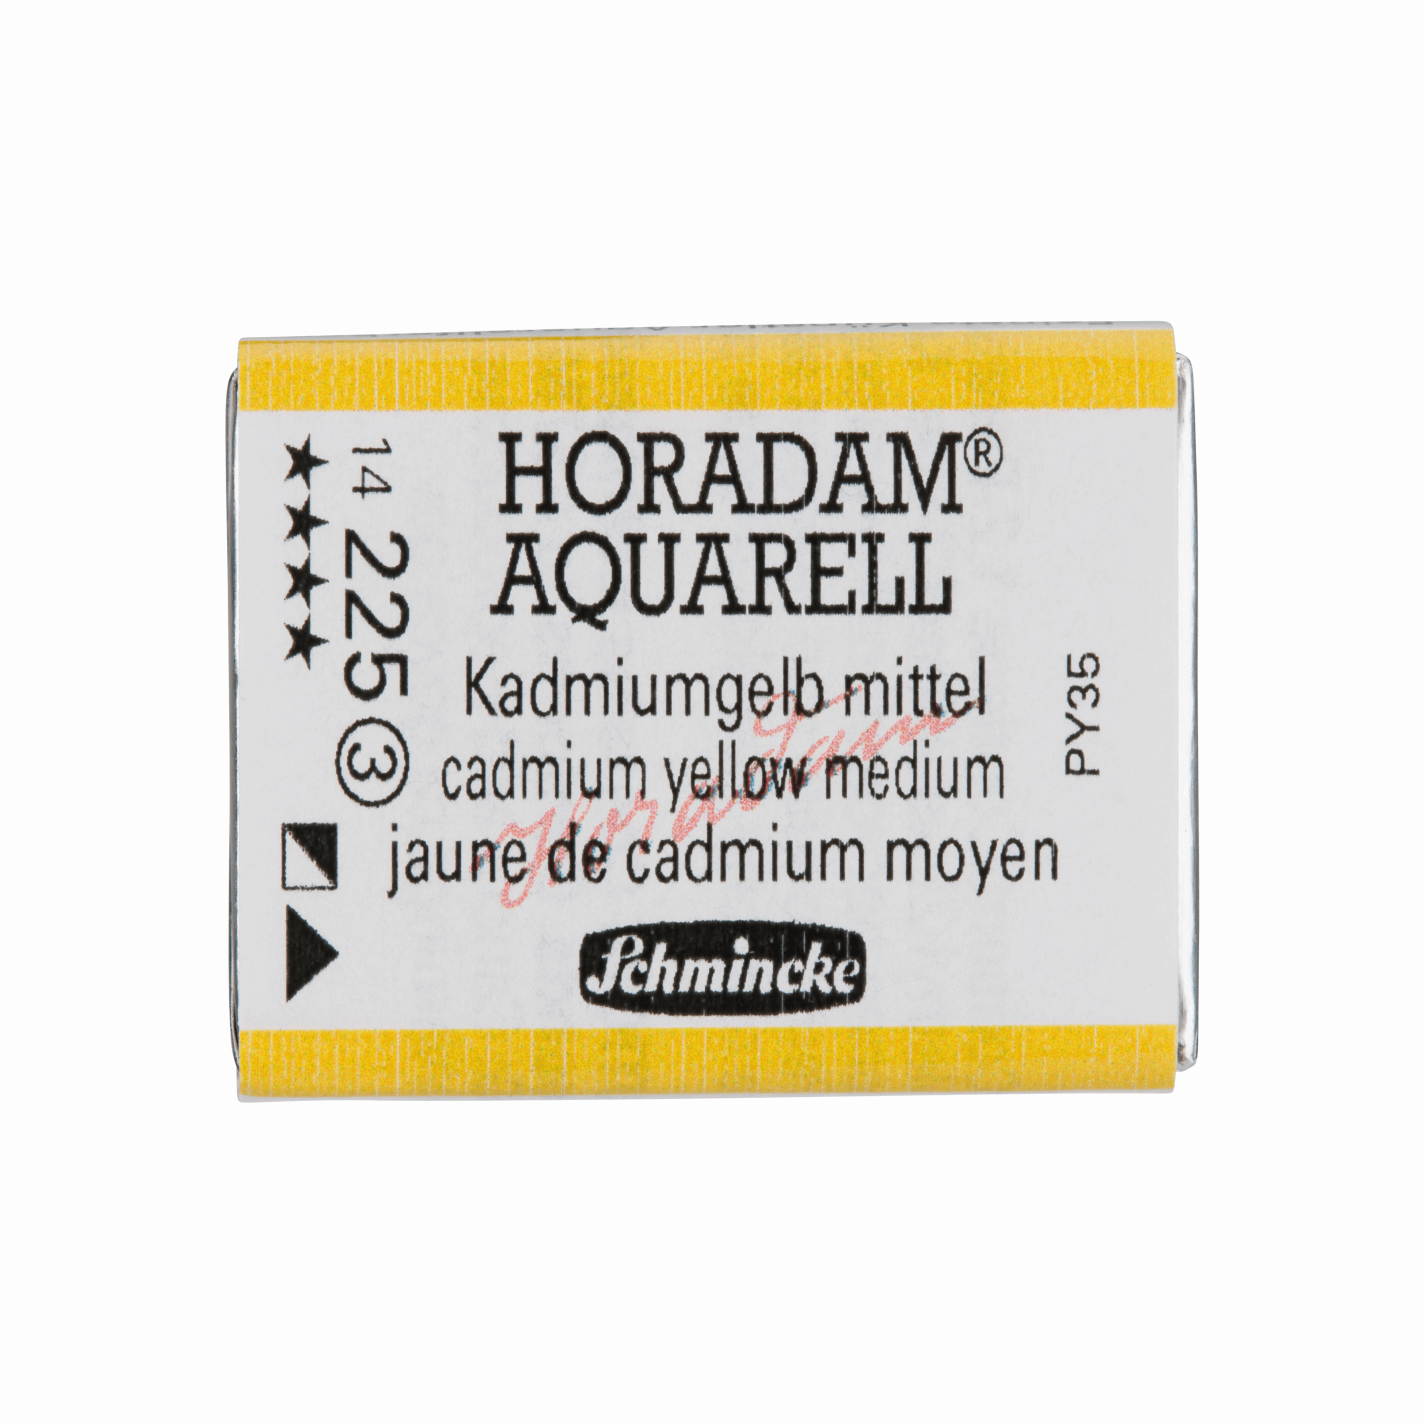 Schmincke Horadam Aquarell pans 1/1 pan Cadmium Yellow Medium